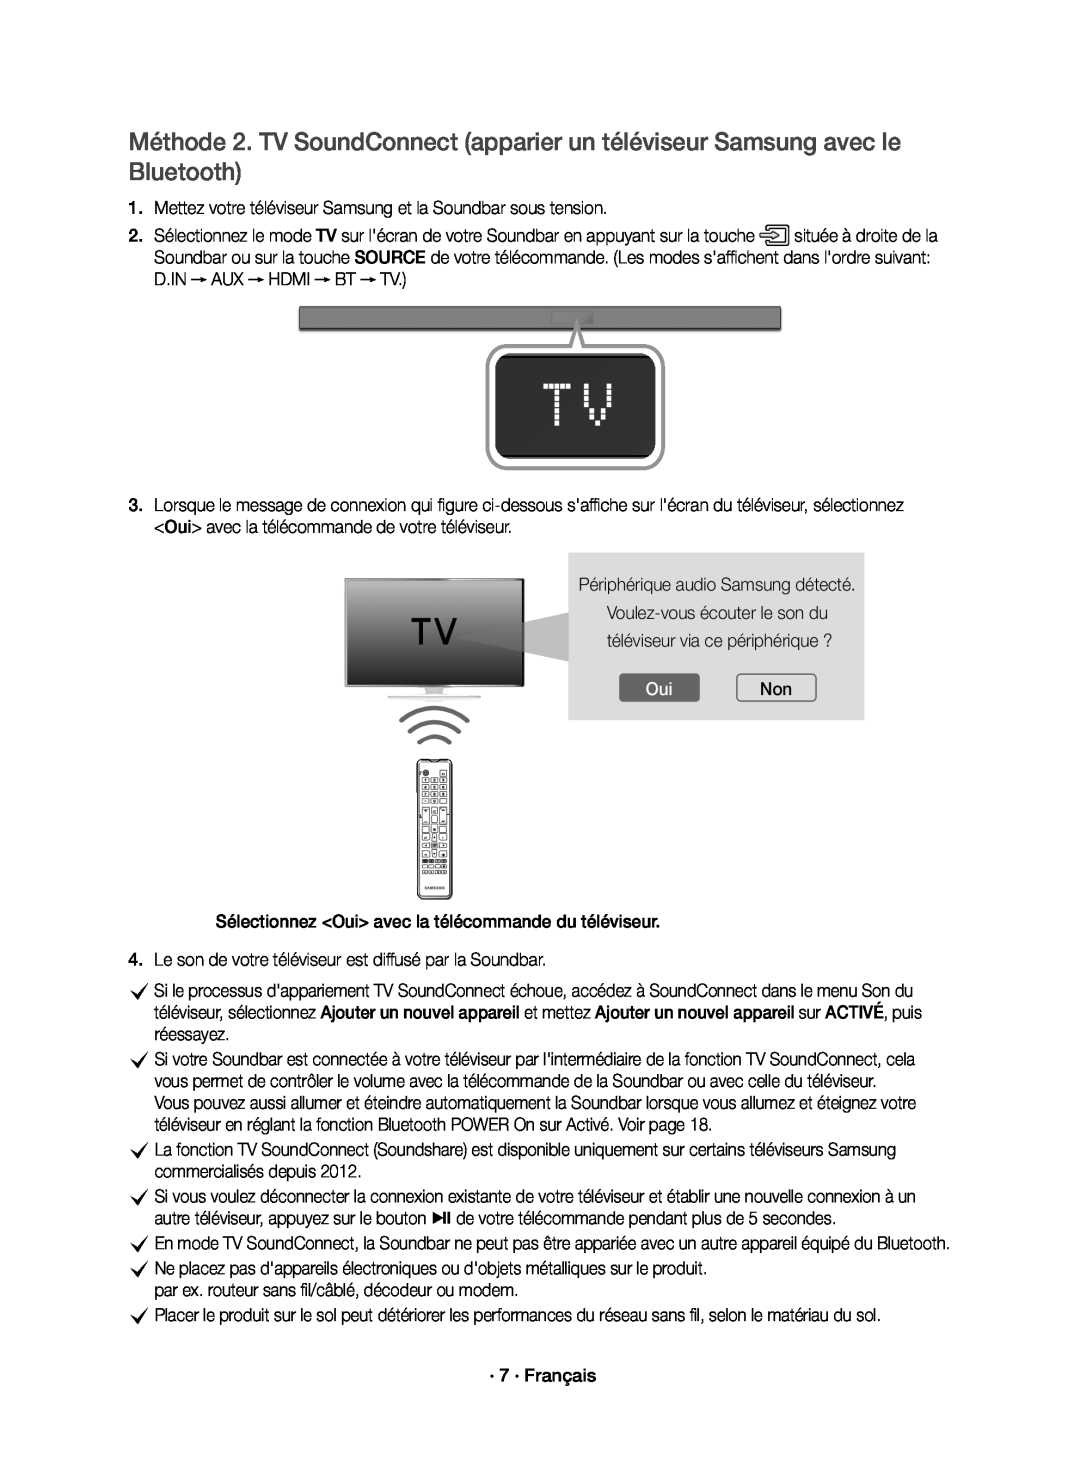 Samsung HW-K650/ZF, HW-K651/ZF manual OuiNon, Mettez votre téléviseur Samsung et la Soundbar sous tension 